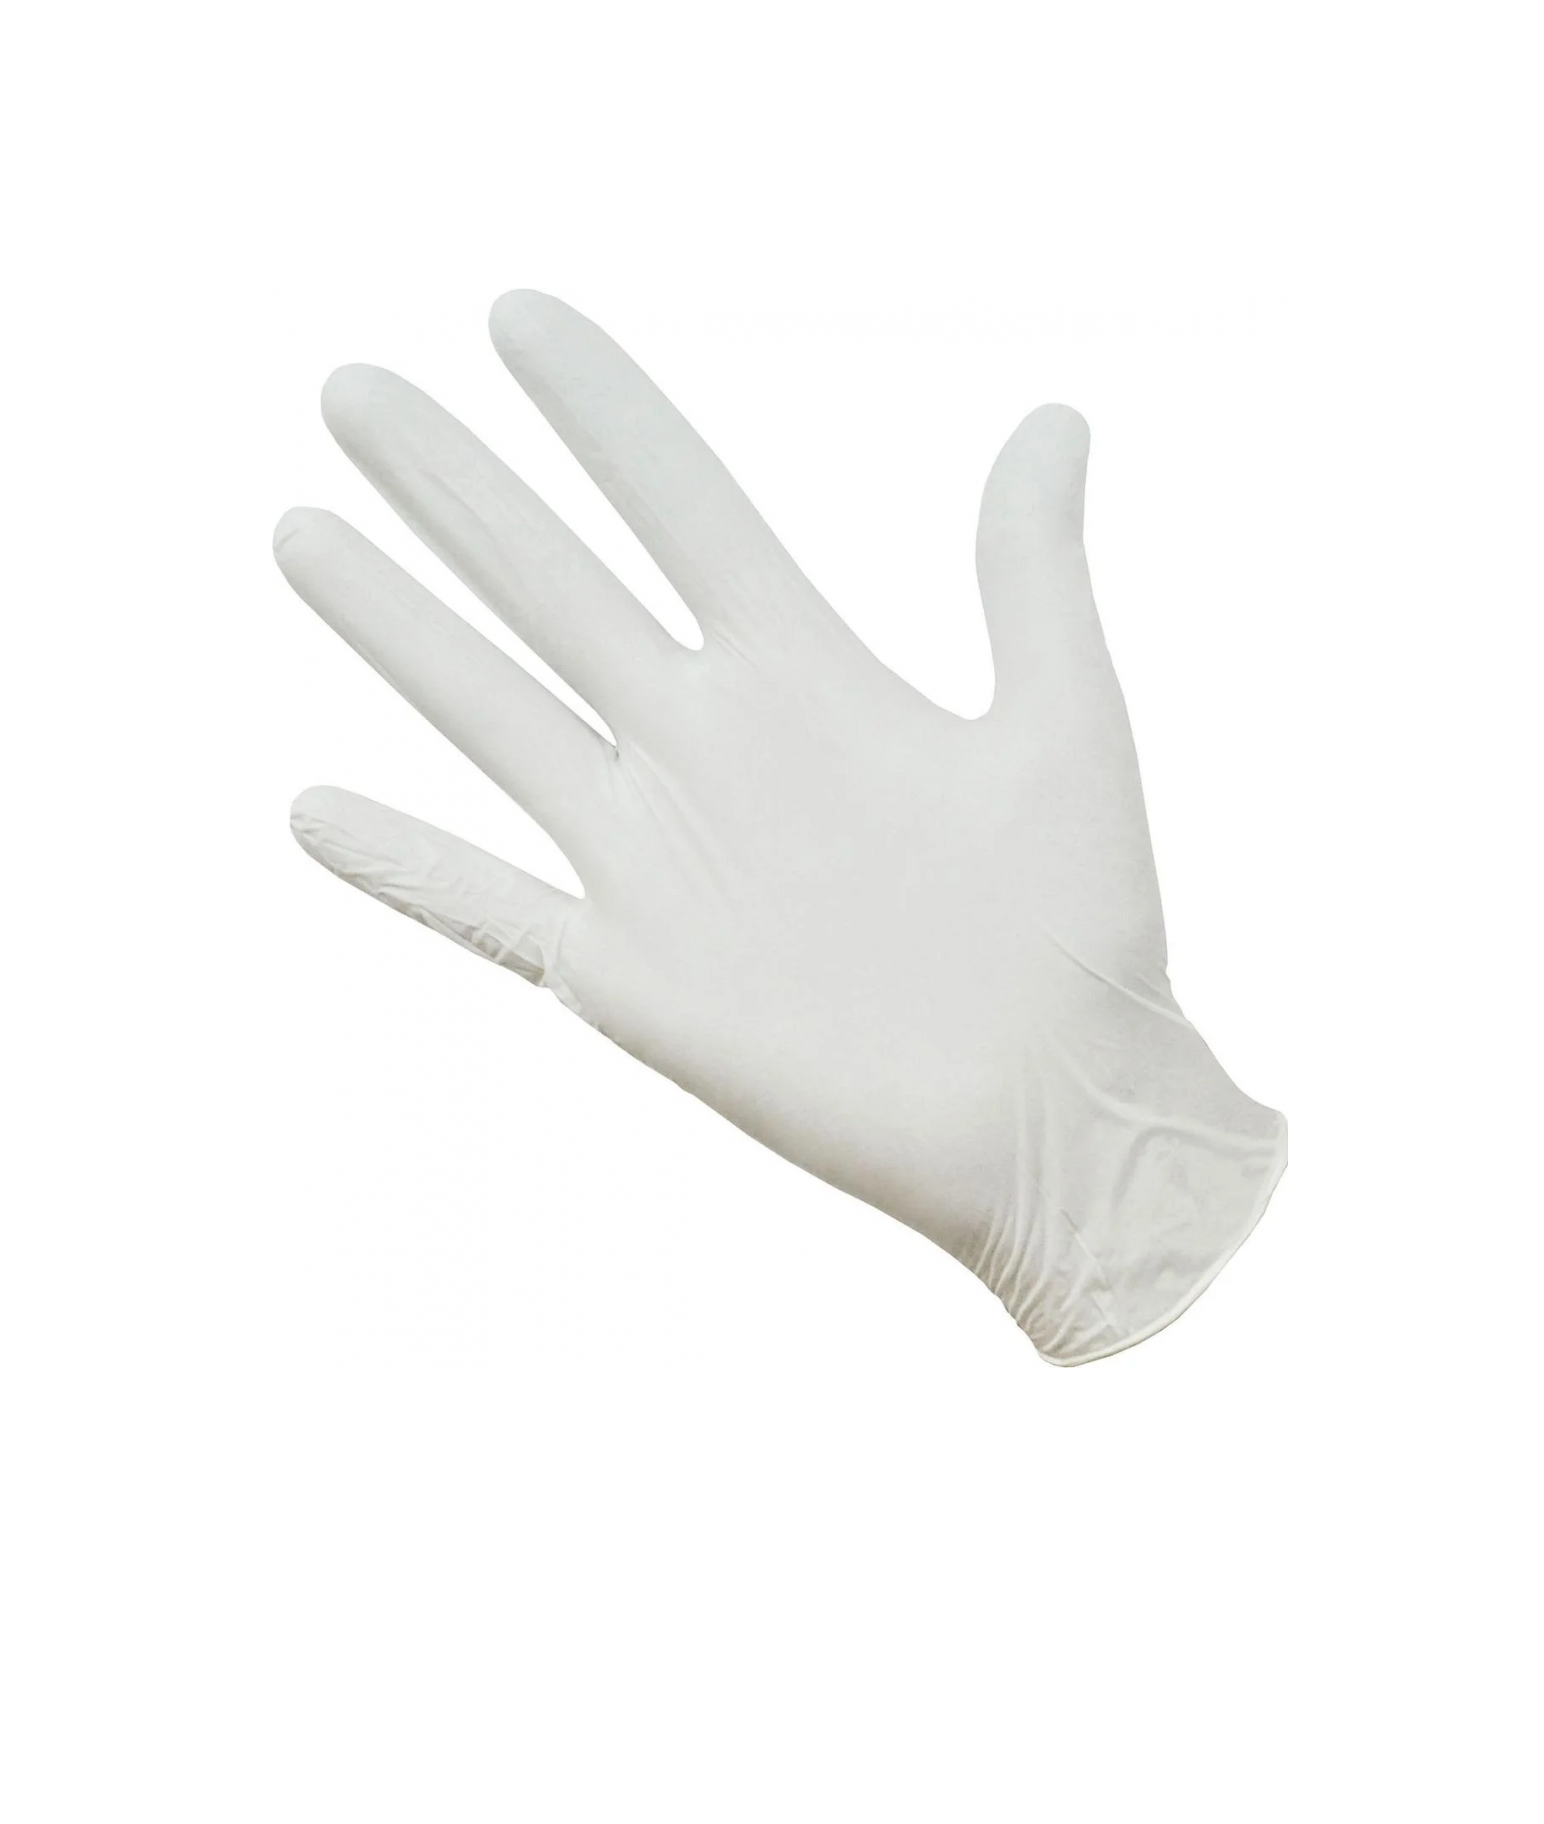 Перчатки Gward,белые, нитриловые, Deltagrip Ultra, LS, размер 7,S, 50пар ярлыки садовые для маркировки 22 см с маркером набор 8 шт пластик белые